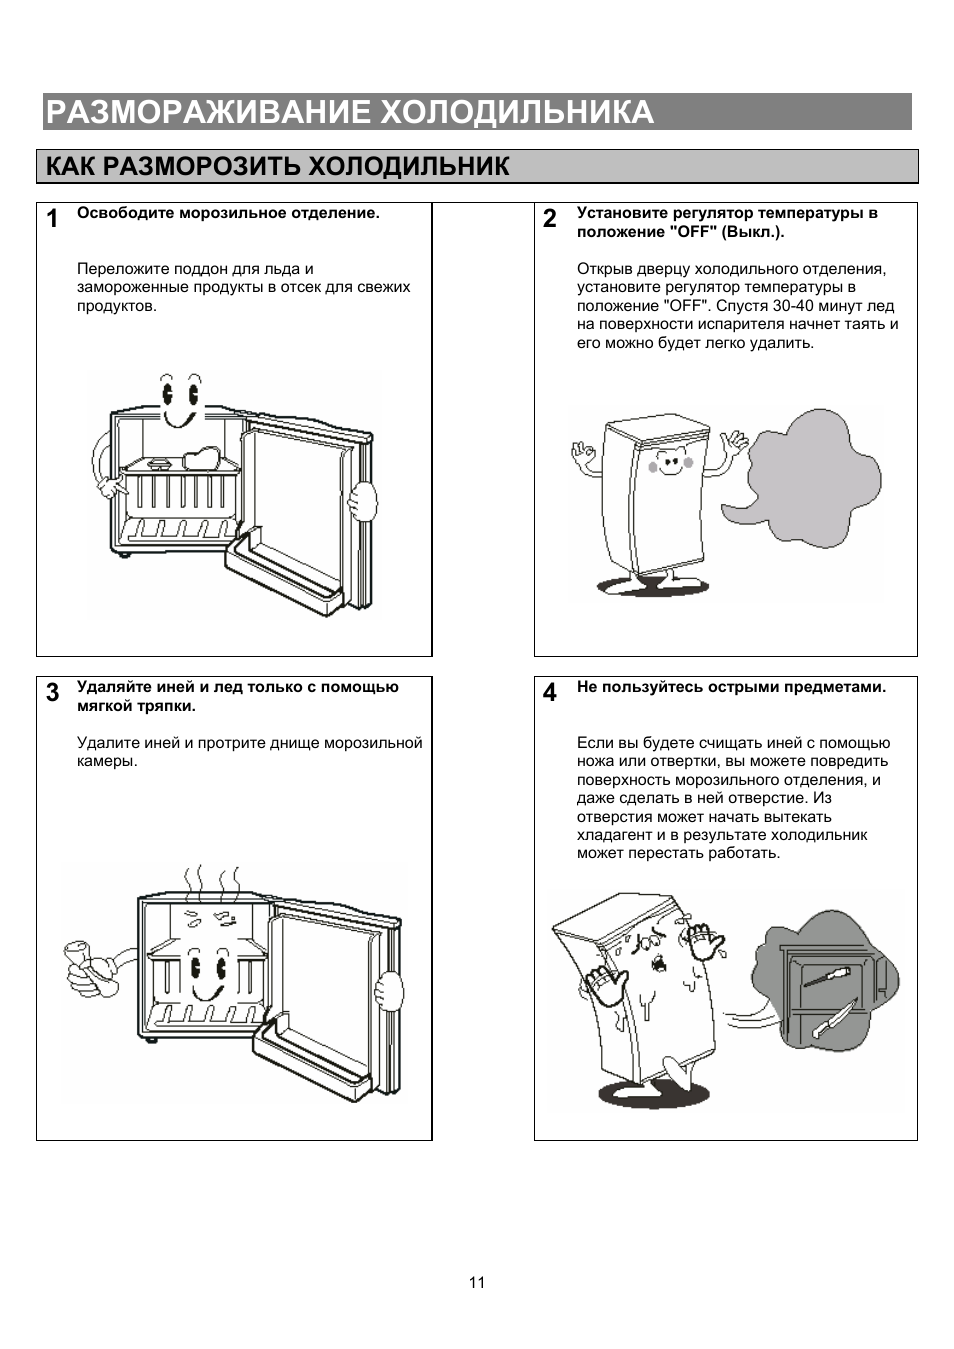 Как разморозить холодильник: простая и понятная пошаговая инструкция